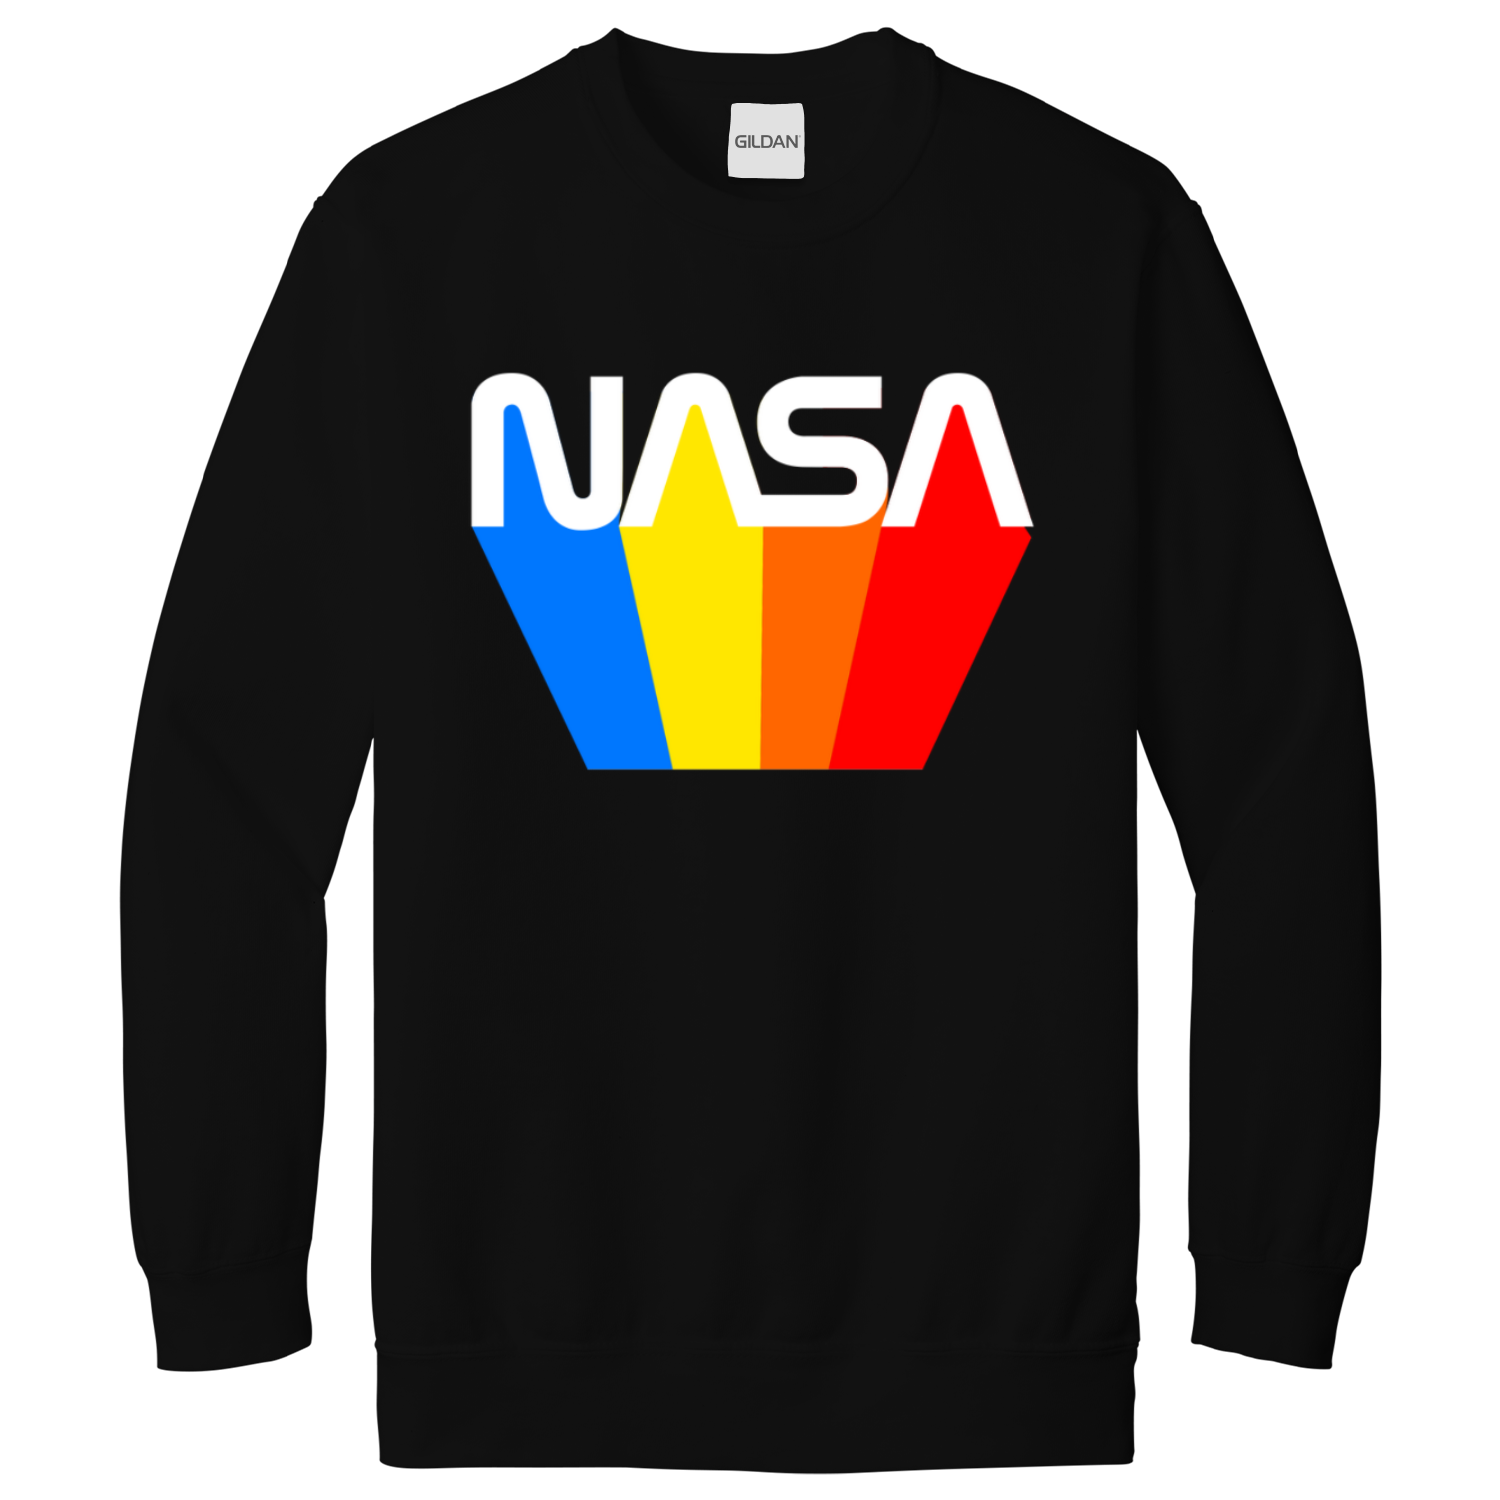 NASA 80’s Retro Sweatshirt